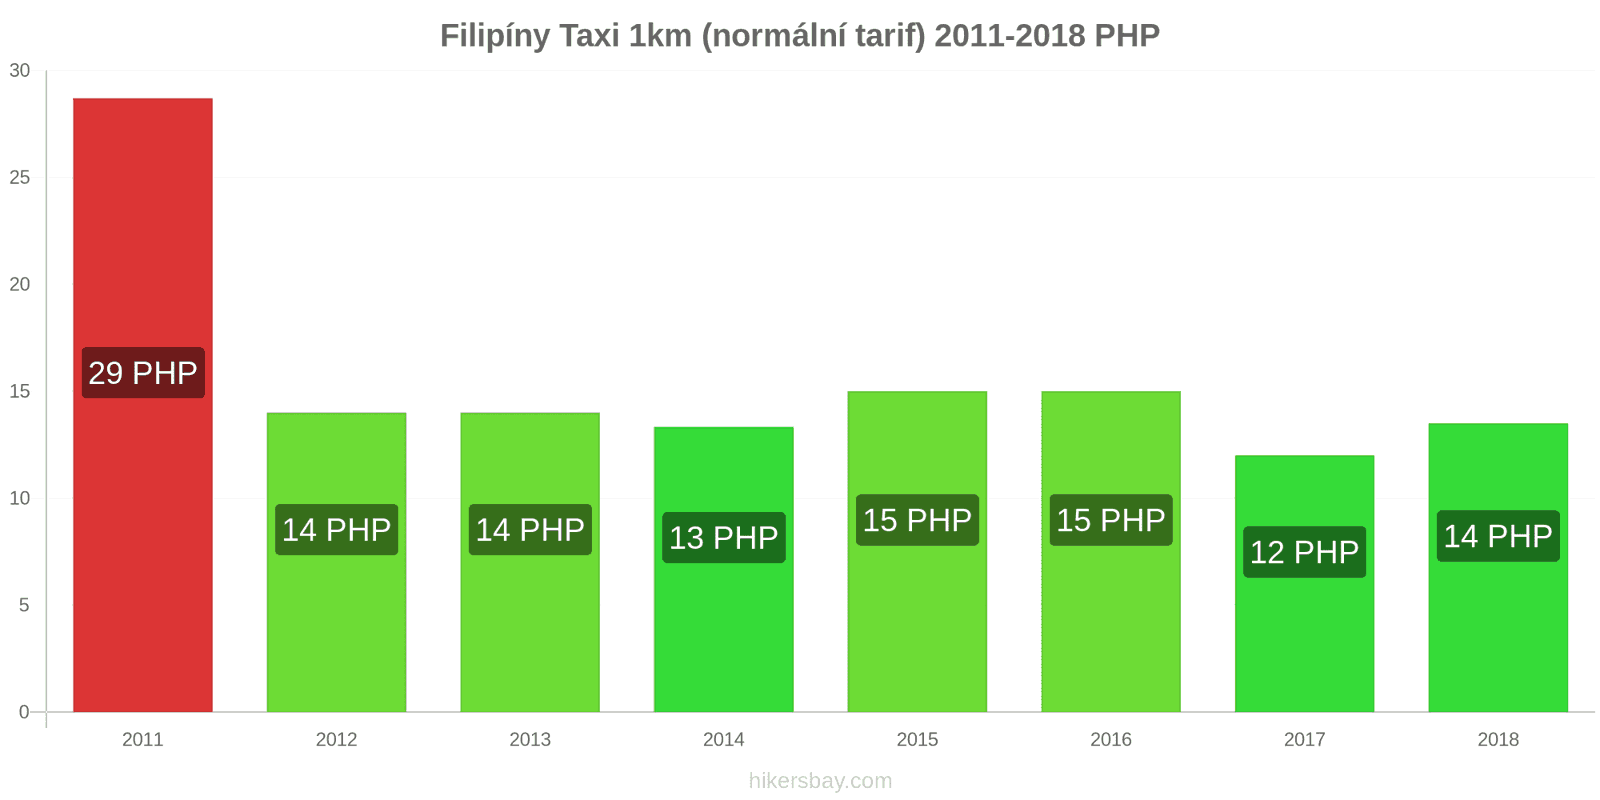 Filipíny změny cen Taxi 1km (normální tarif) hikersbay.com